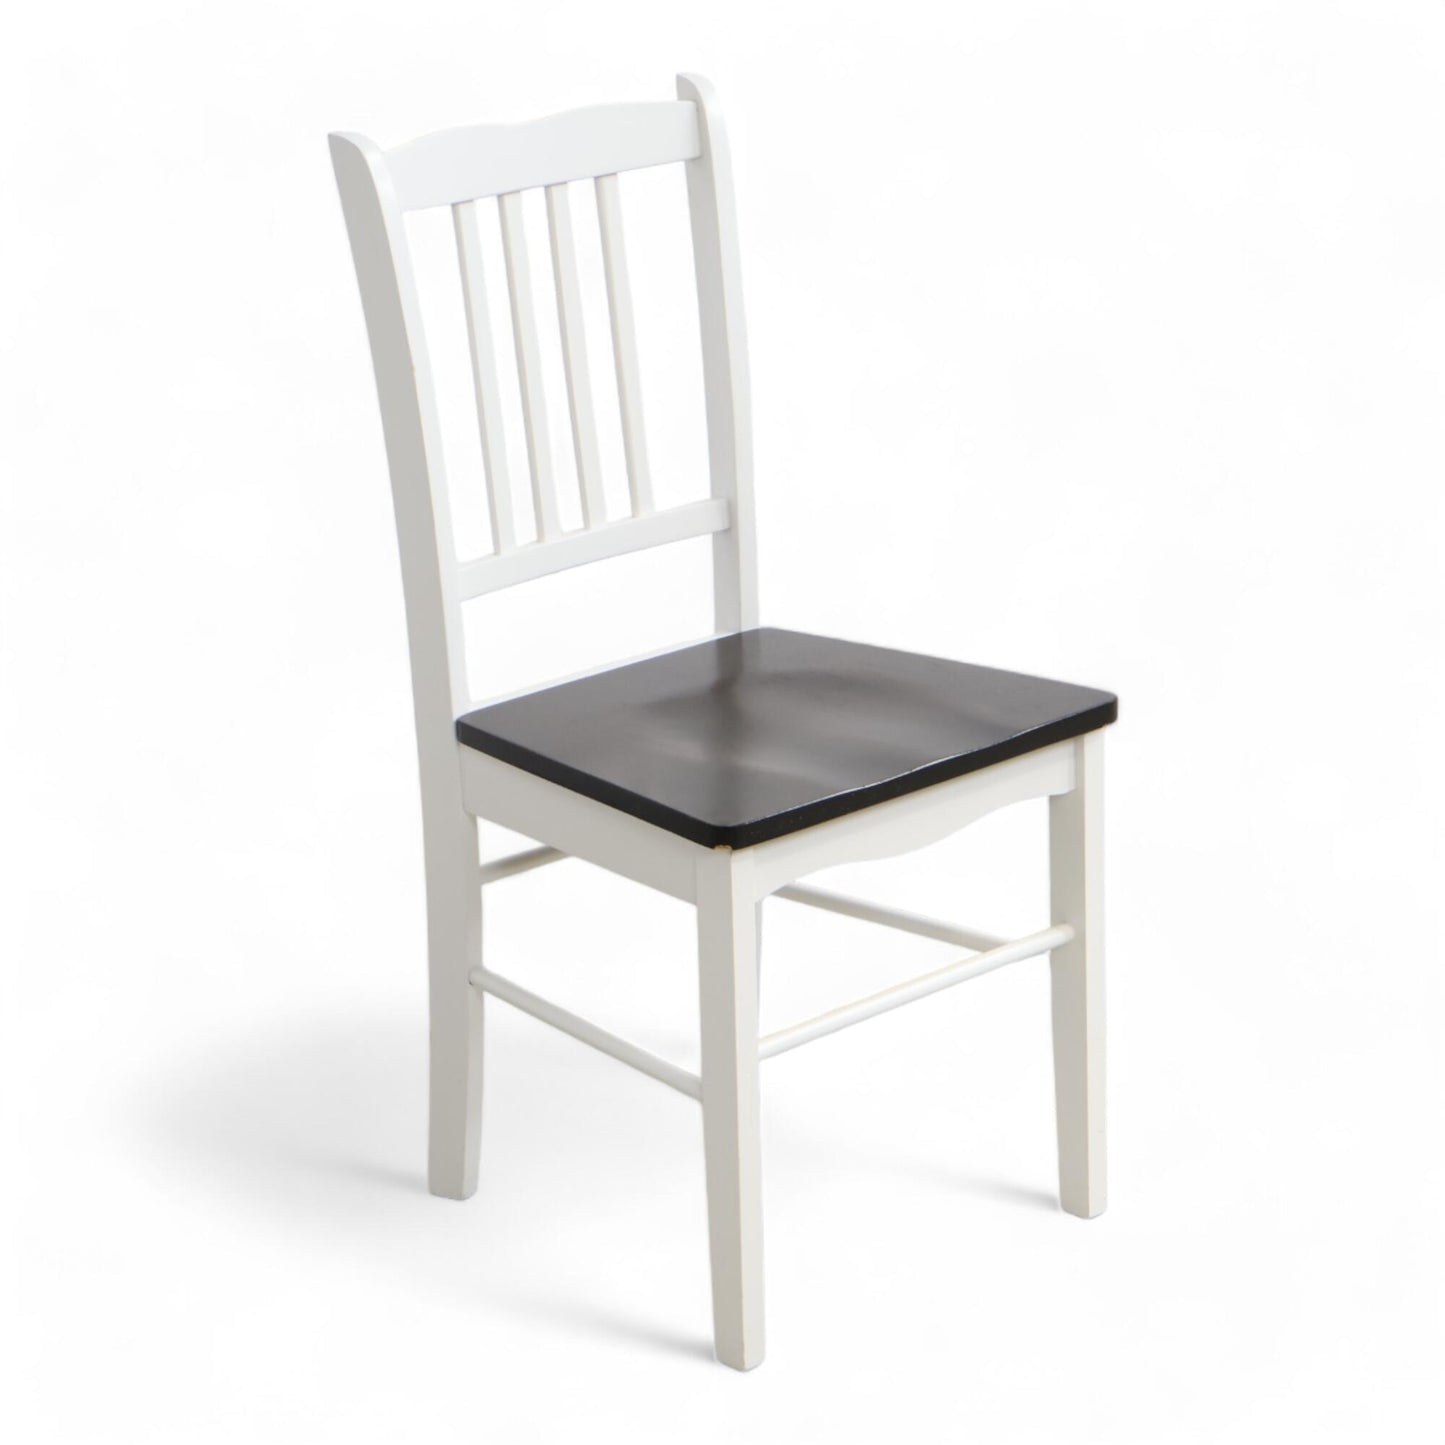 Nyrenset | Hvit med mørk brun sete stol fra Jysk